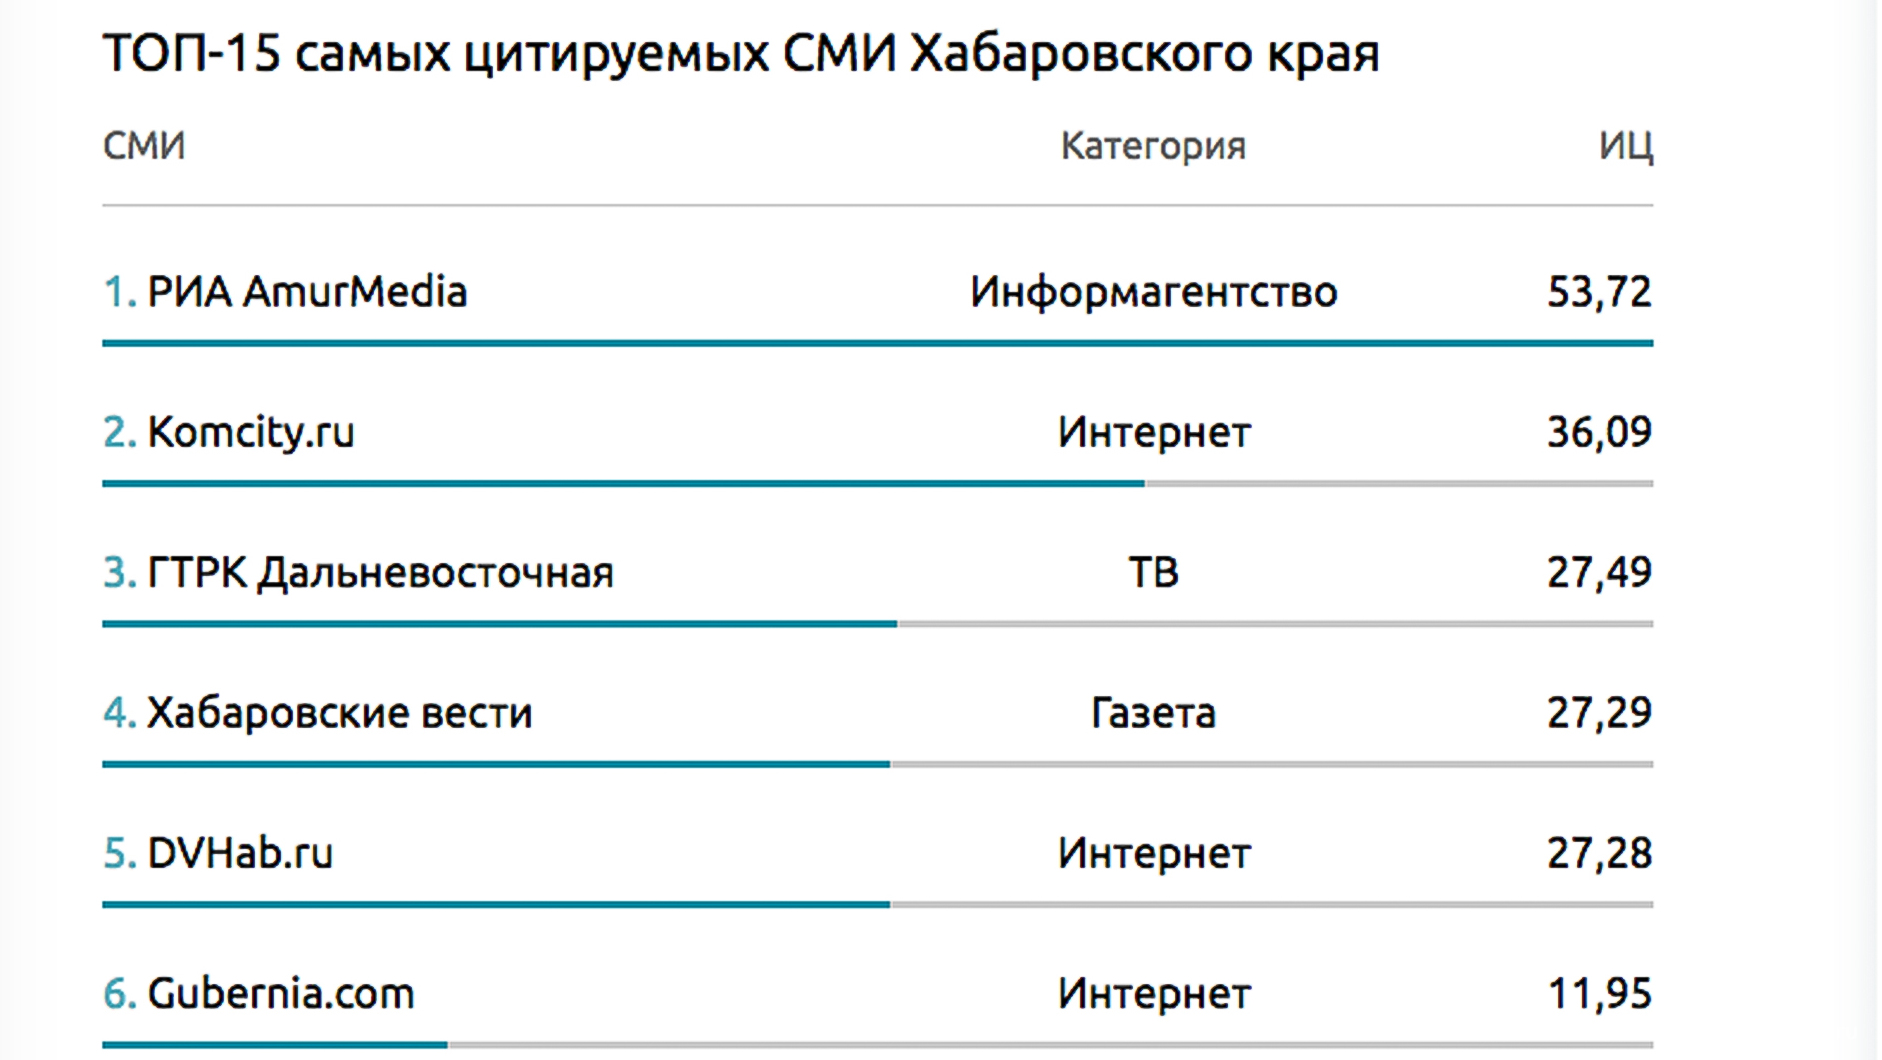 Сайт komcity.ru вошёл в тройку самых цитируемых СМИ Хабаровского края по итогам первого квартала 2017-го года